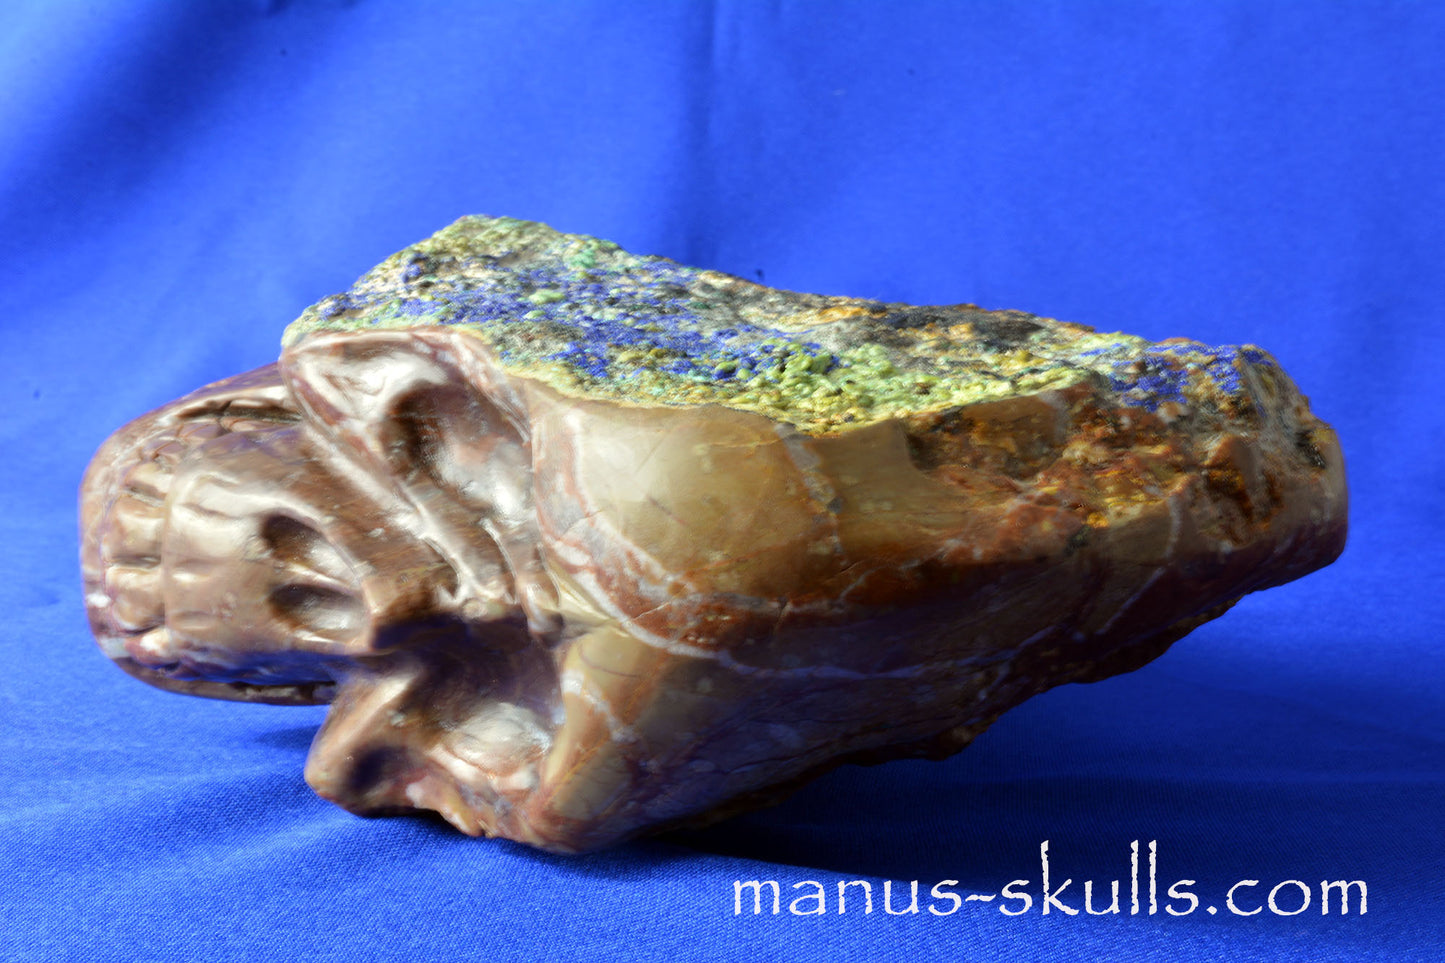 Azurite Malachite Skull